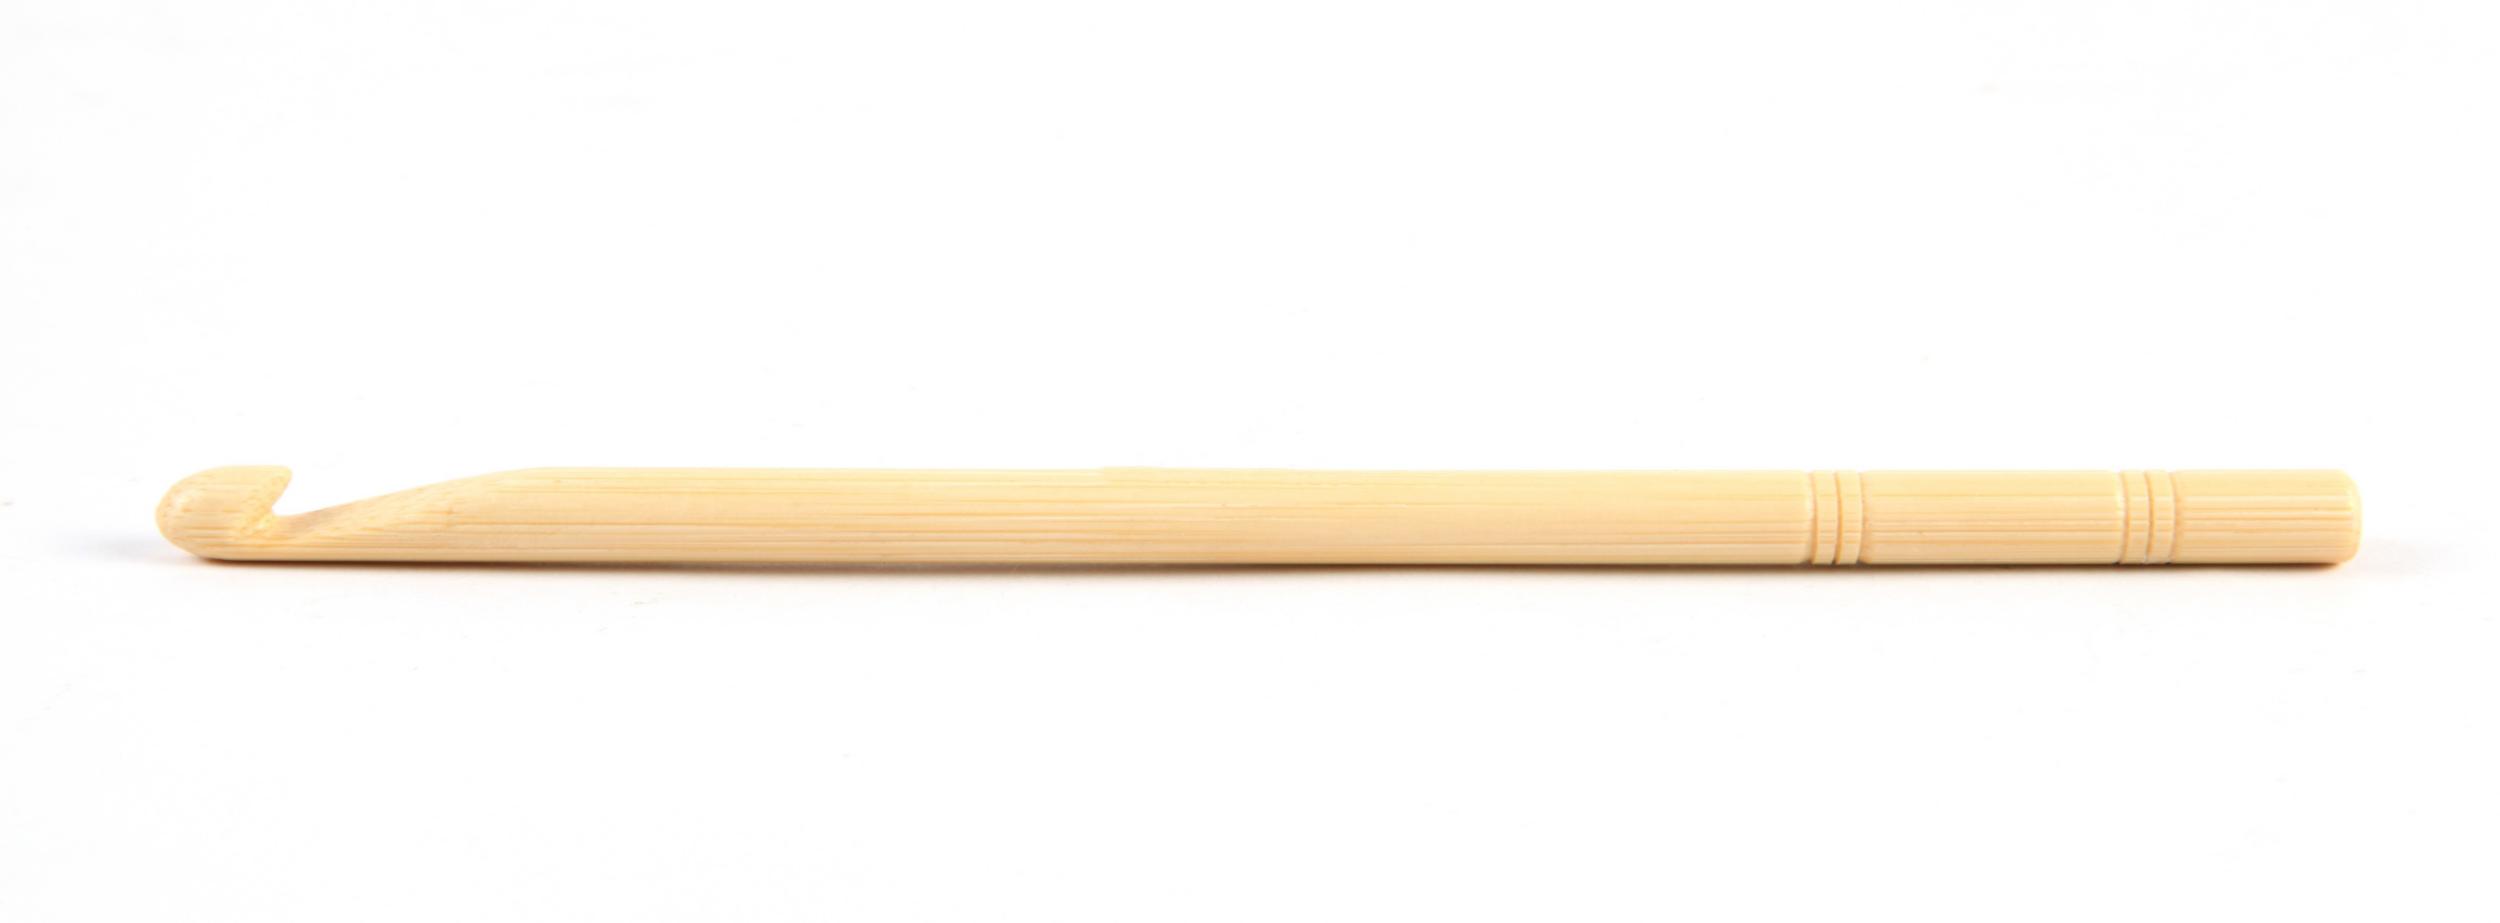 22511 Крючок бамбуковий KnitPro, 9.00 мм